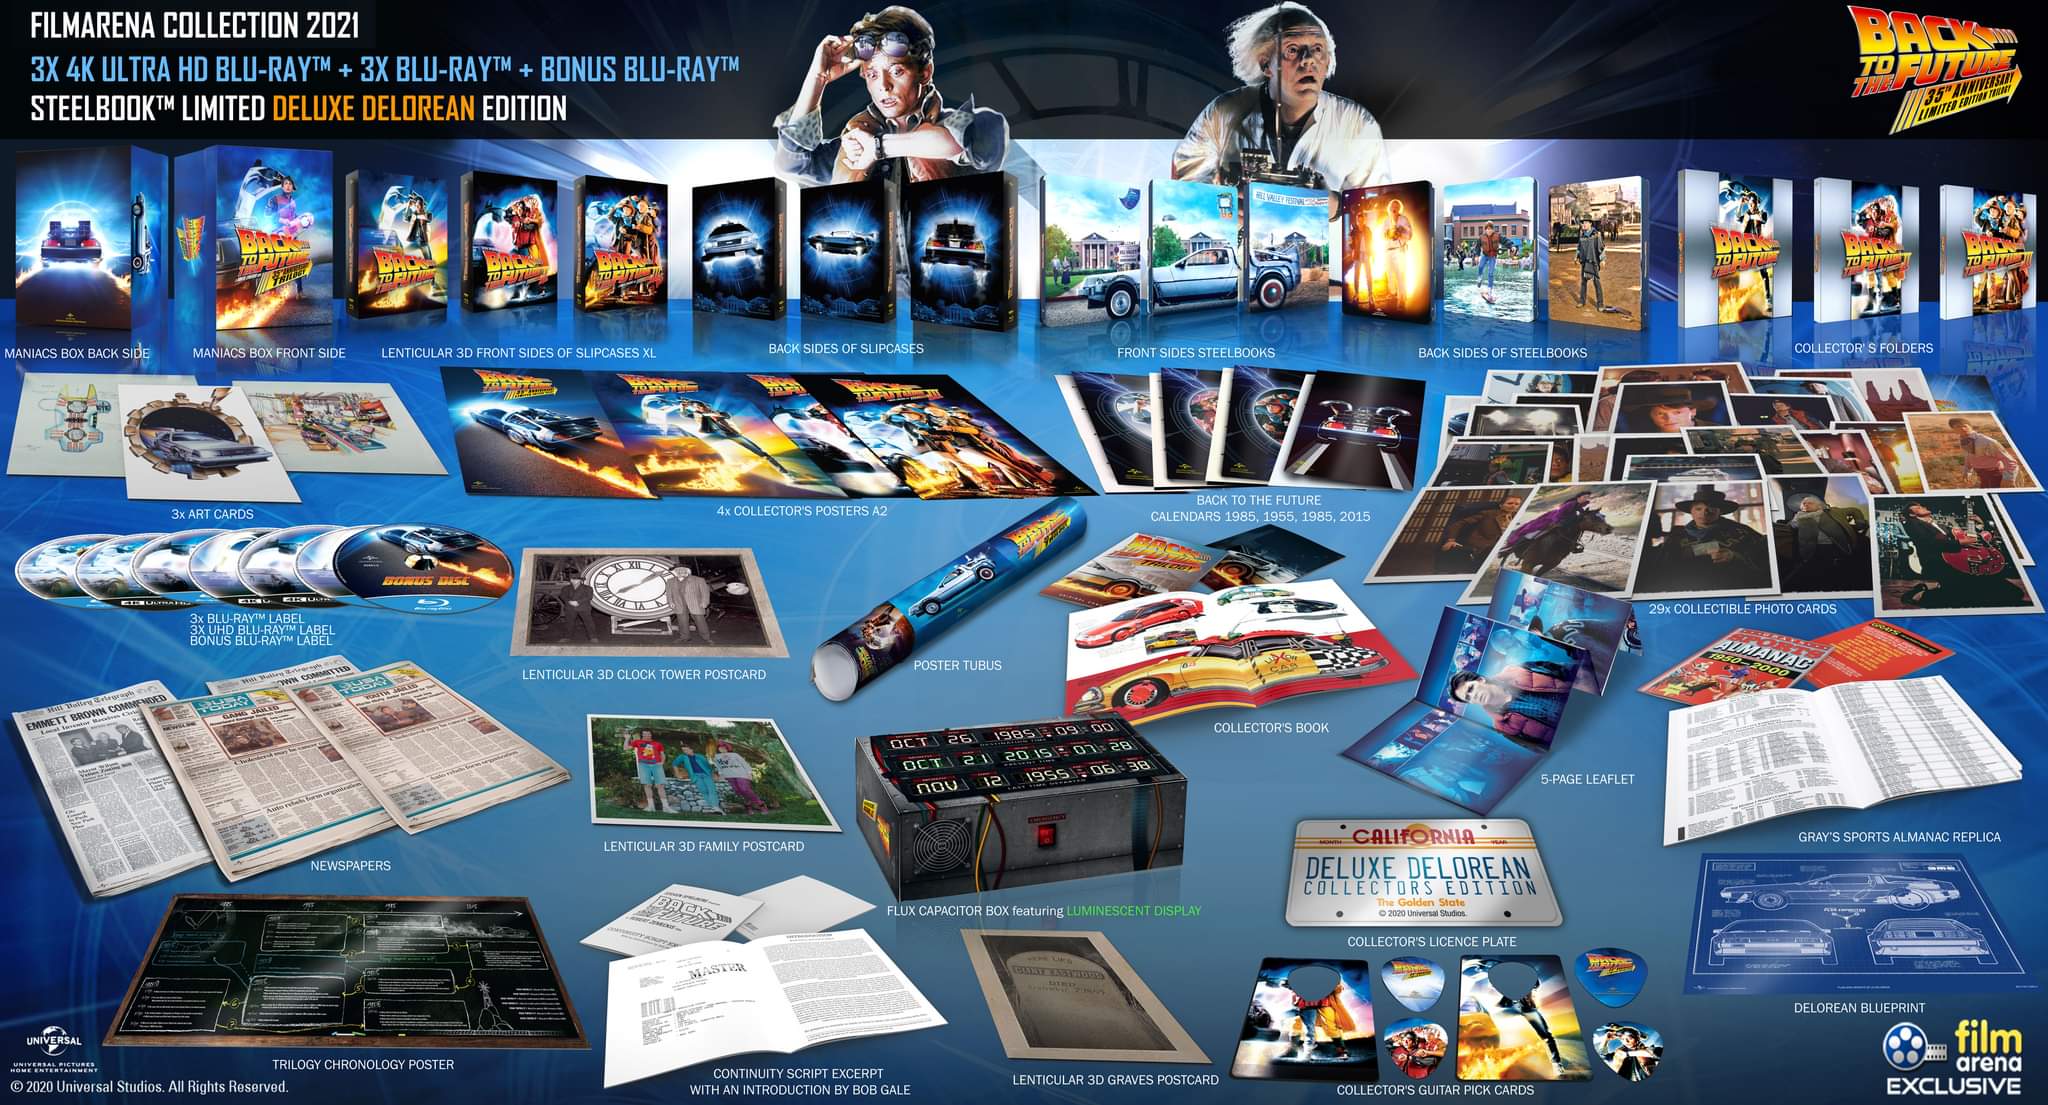 Bon Plan] Coffret Trilogy Retour vers le Futur - 3 Steelbook - Blu-Ray 4K -  60 € - Steelbook Jeux Vidéo